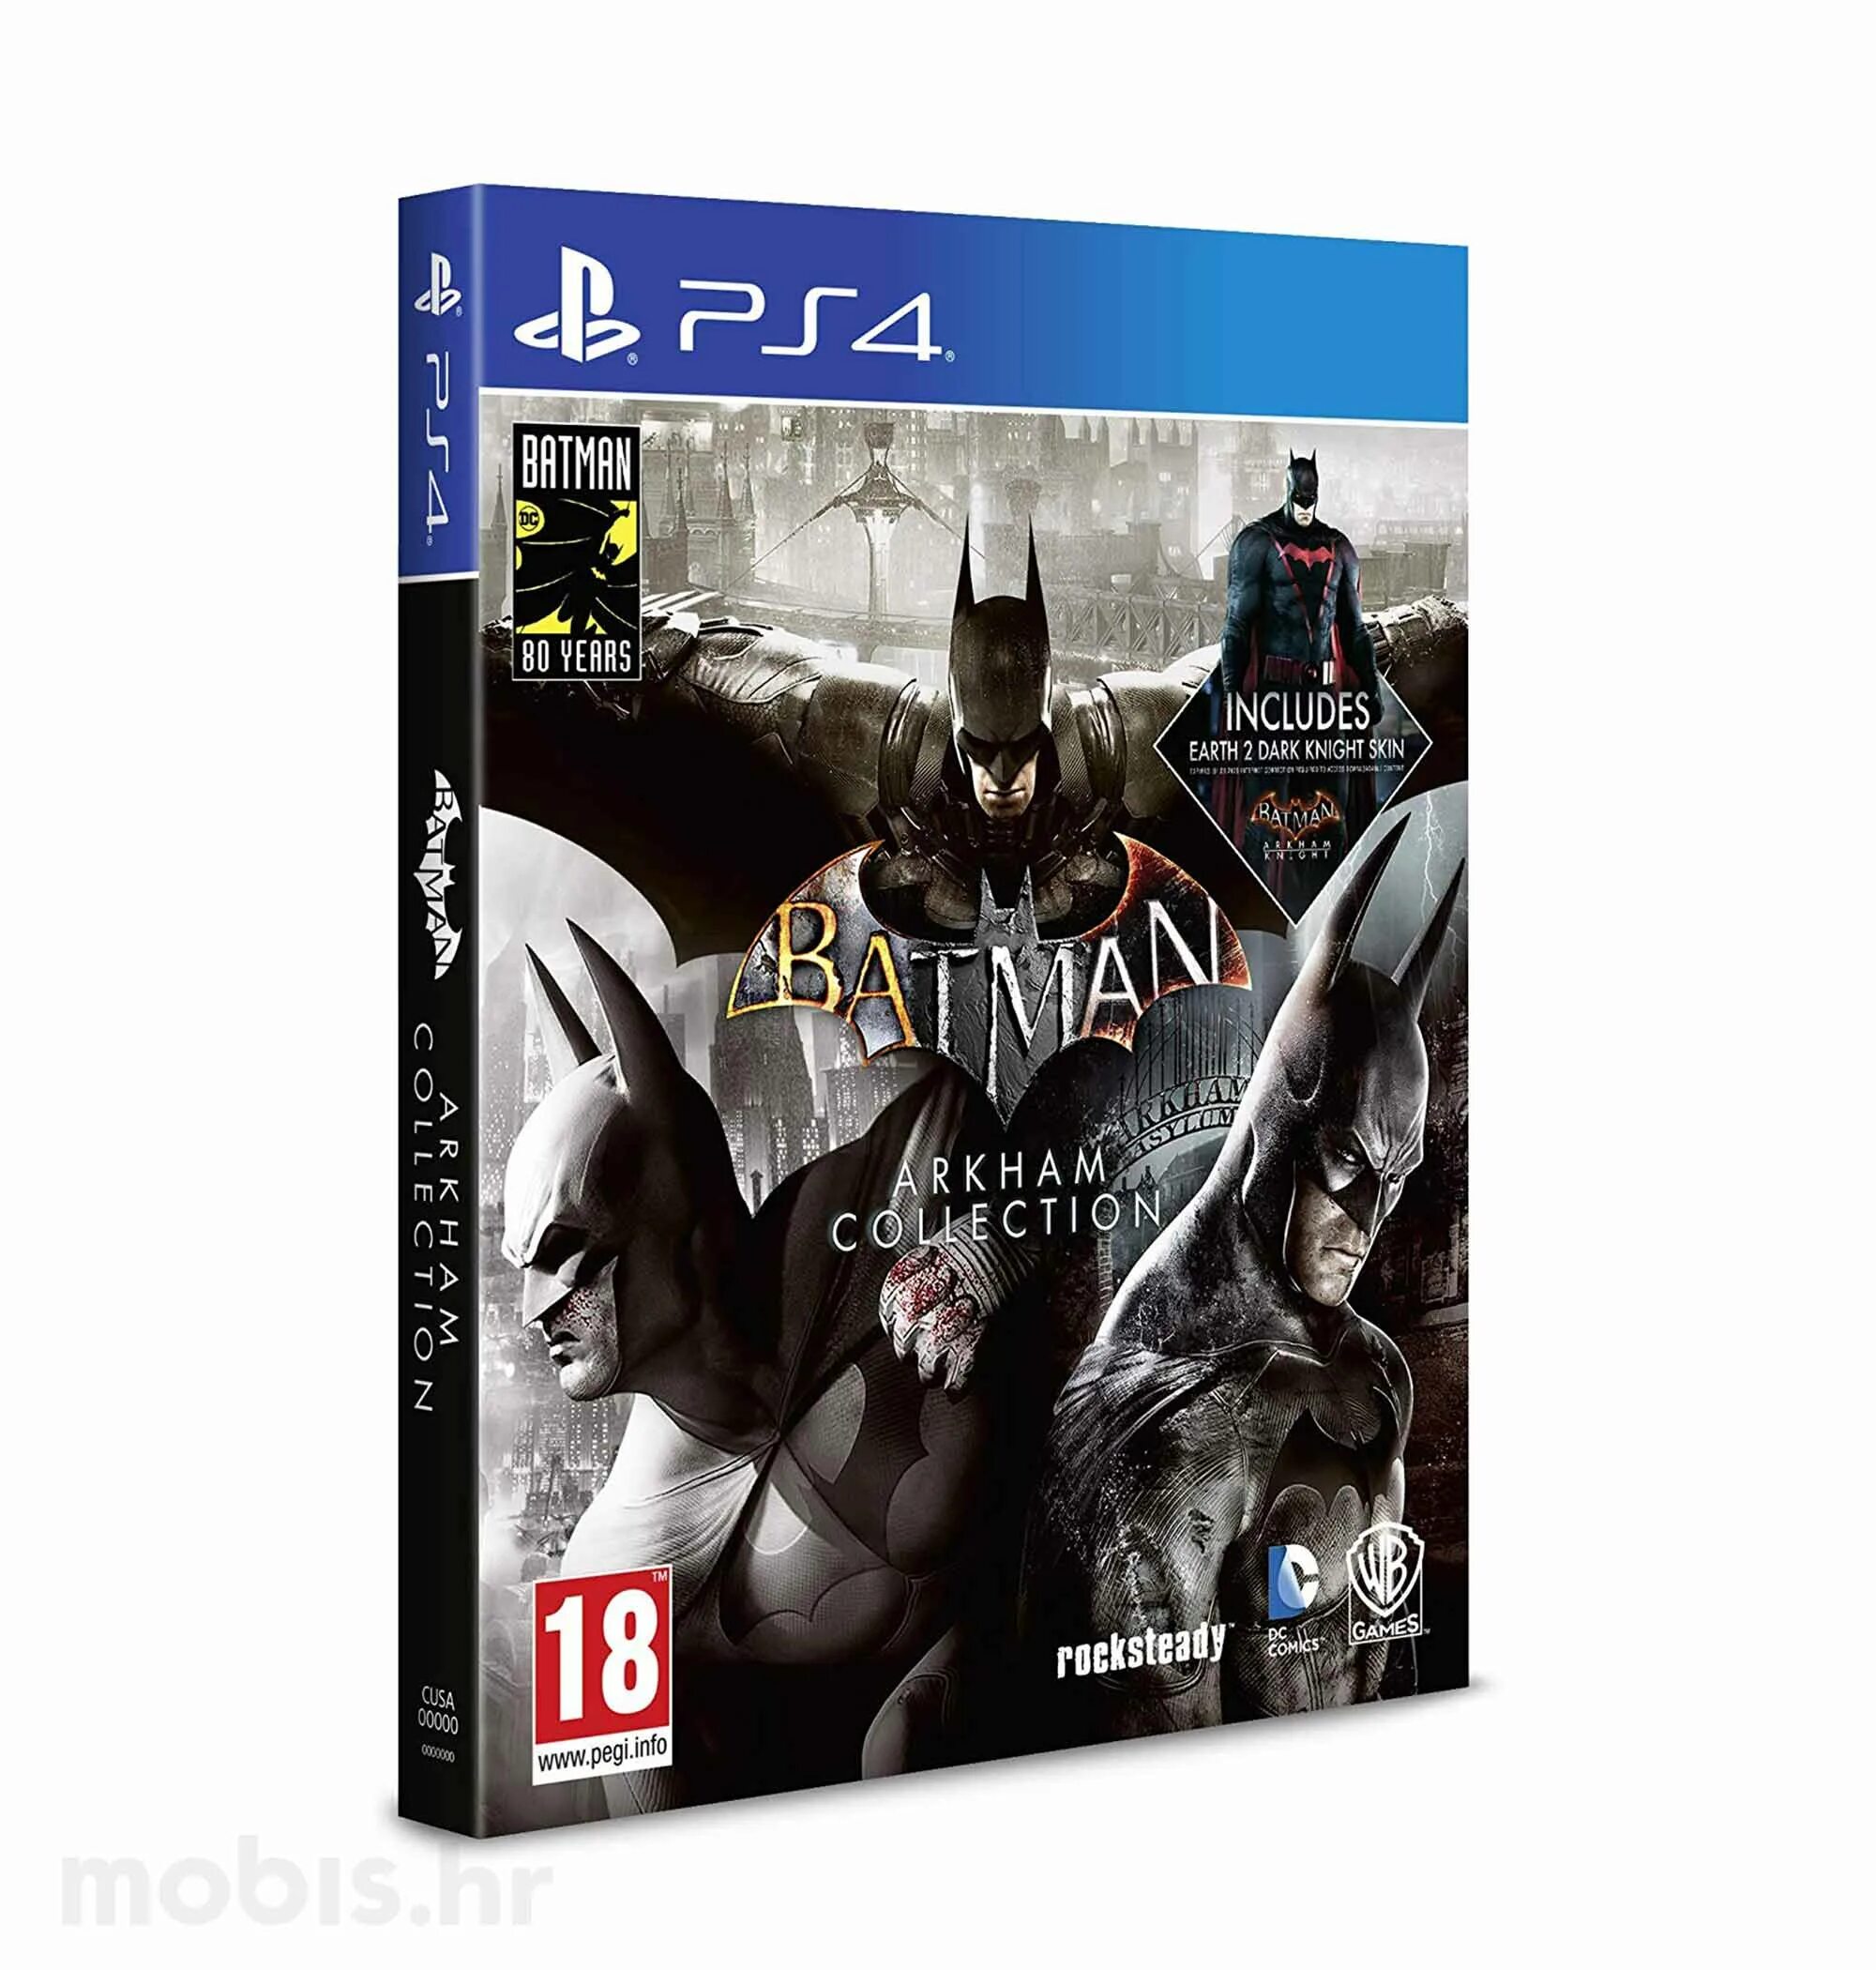 Ps4 collection купить. Batman Arkham collection (ps4). Batman Arkham collection ps4 диск. Диск Xbox one Batman Arkham collection. Batman Arkham collection [ps4, русская версия].